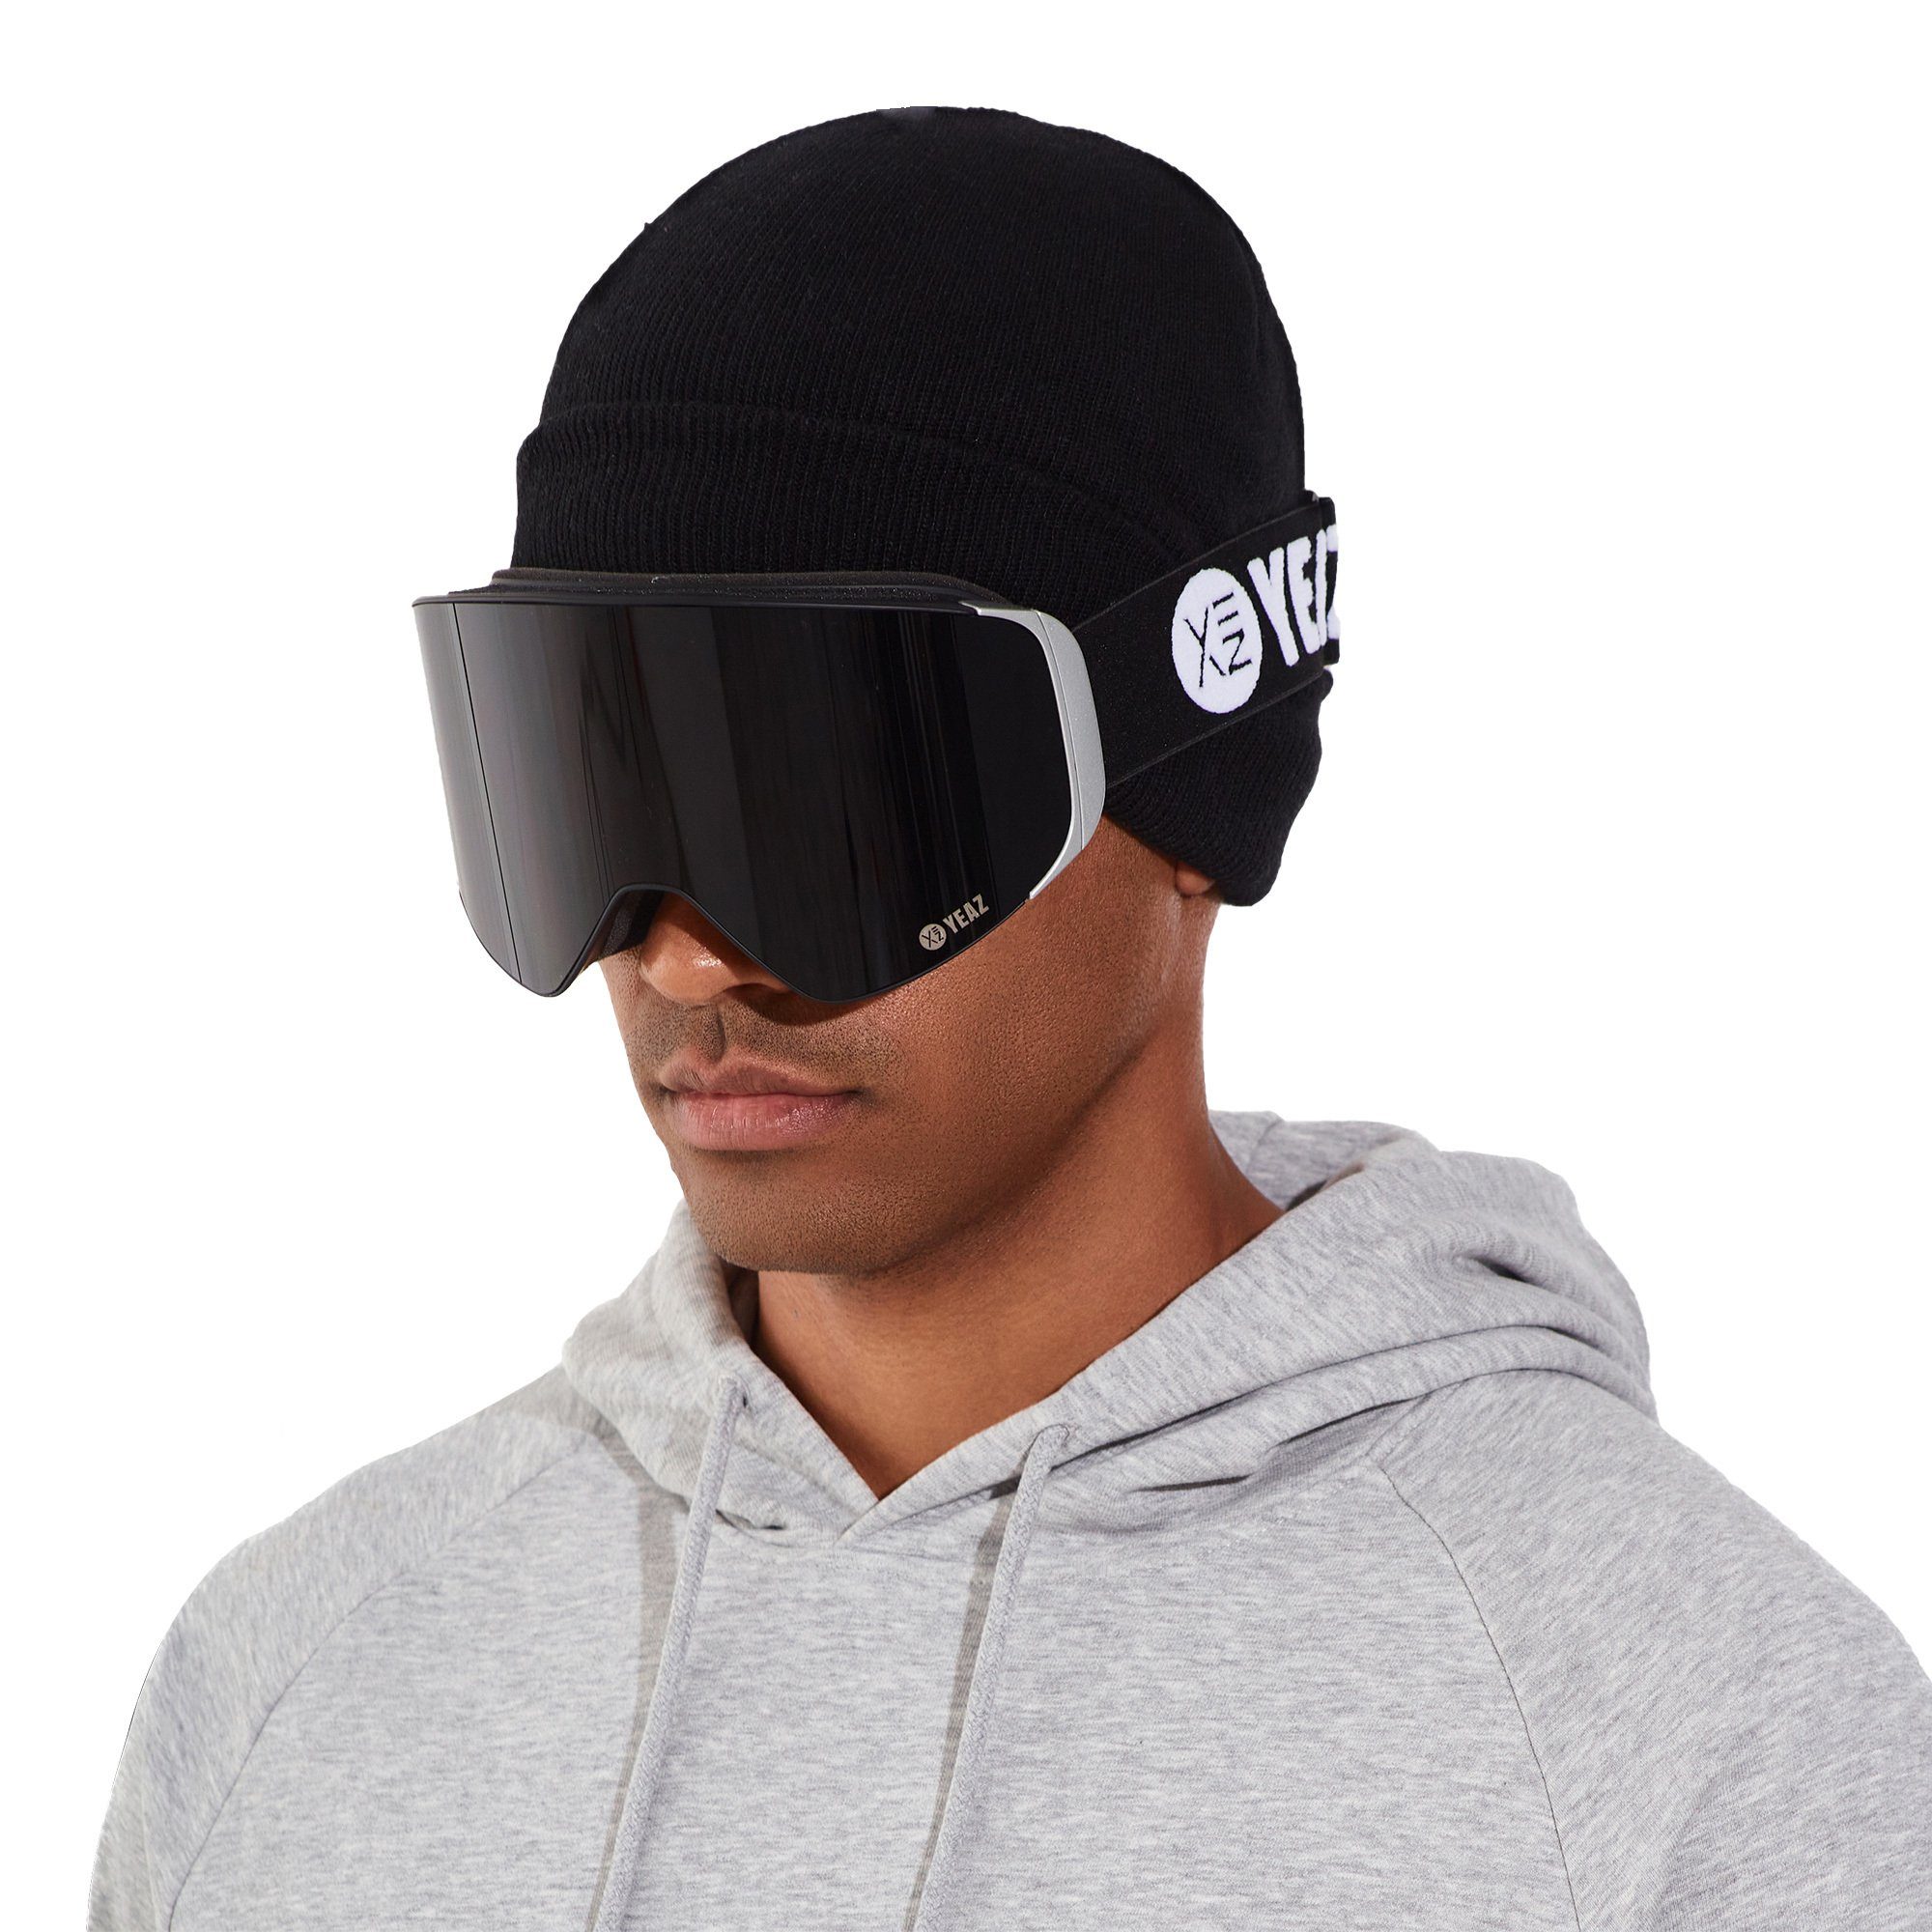 YEAZ schwarz/silber, magnet-ski-snowboardbrille Gläser, Magnet-Wechsel-System für schwarz/silber APEX Skibrille